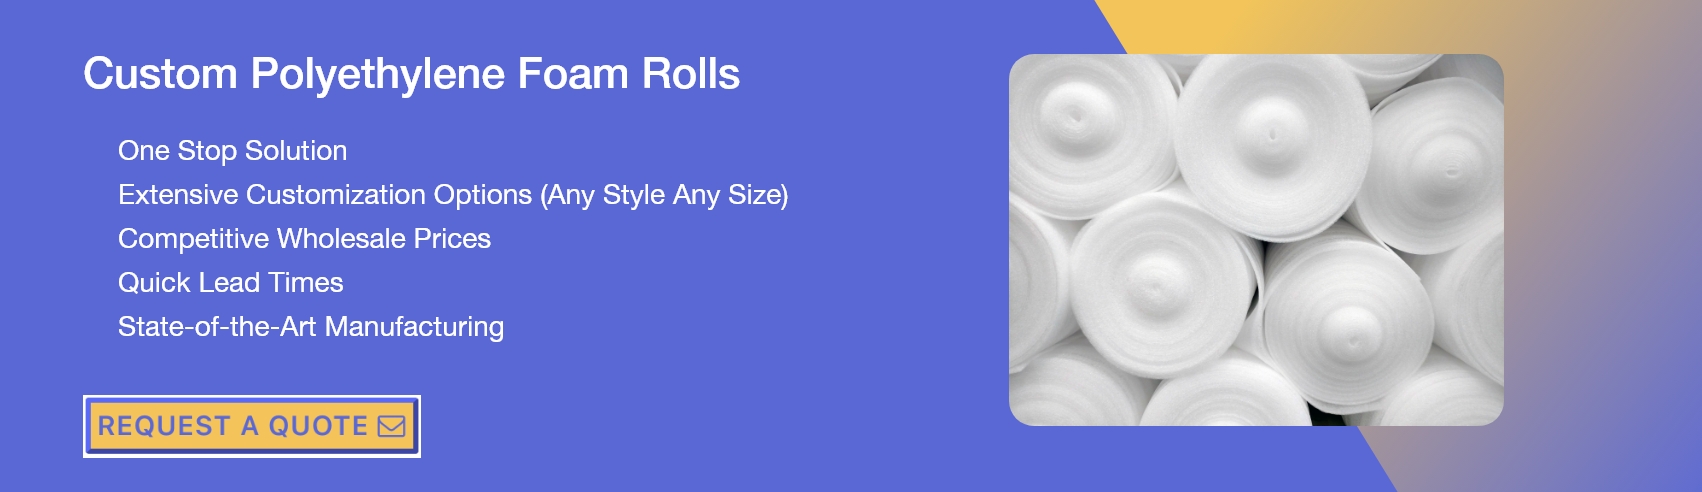 Custom Polyethylene Foam Rolls